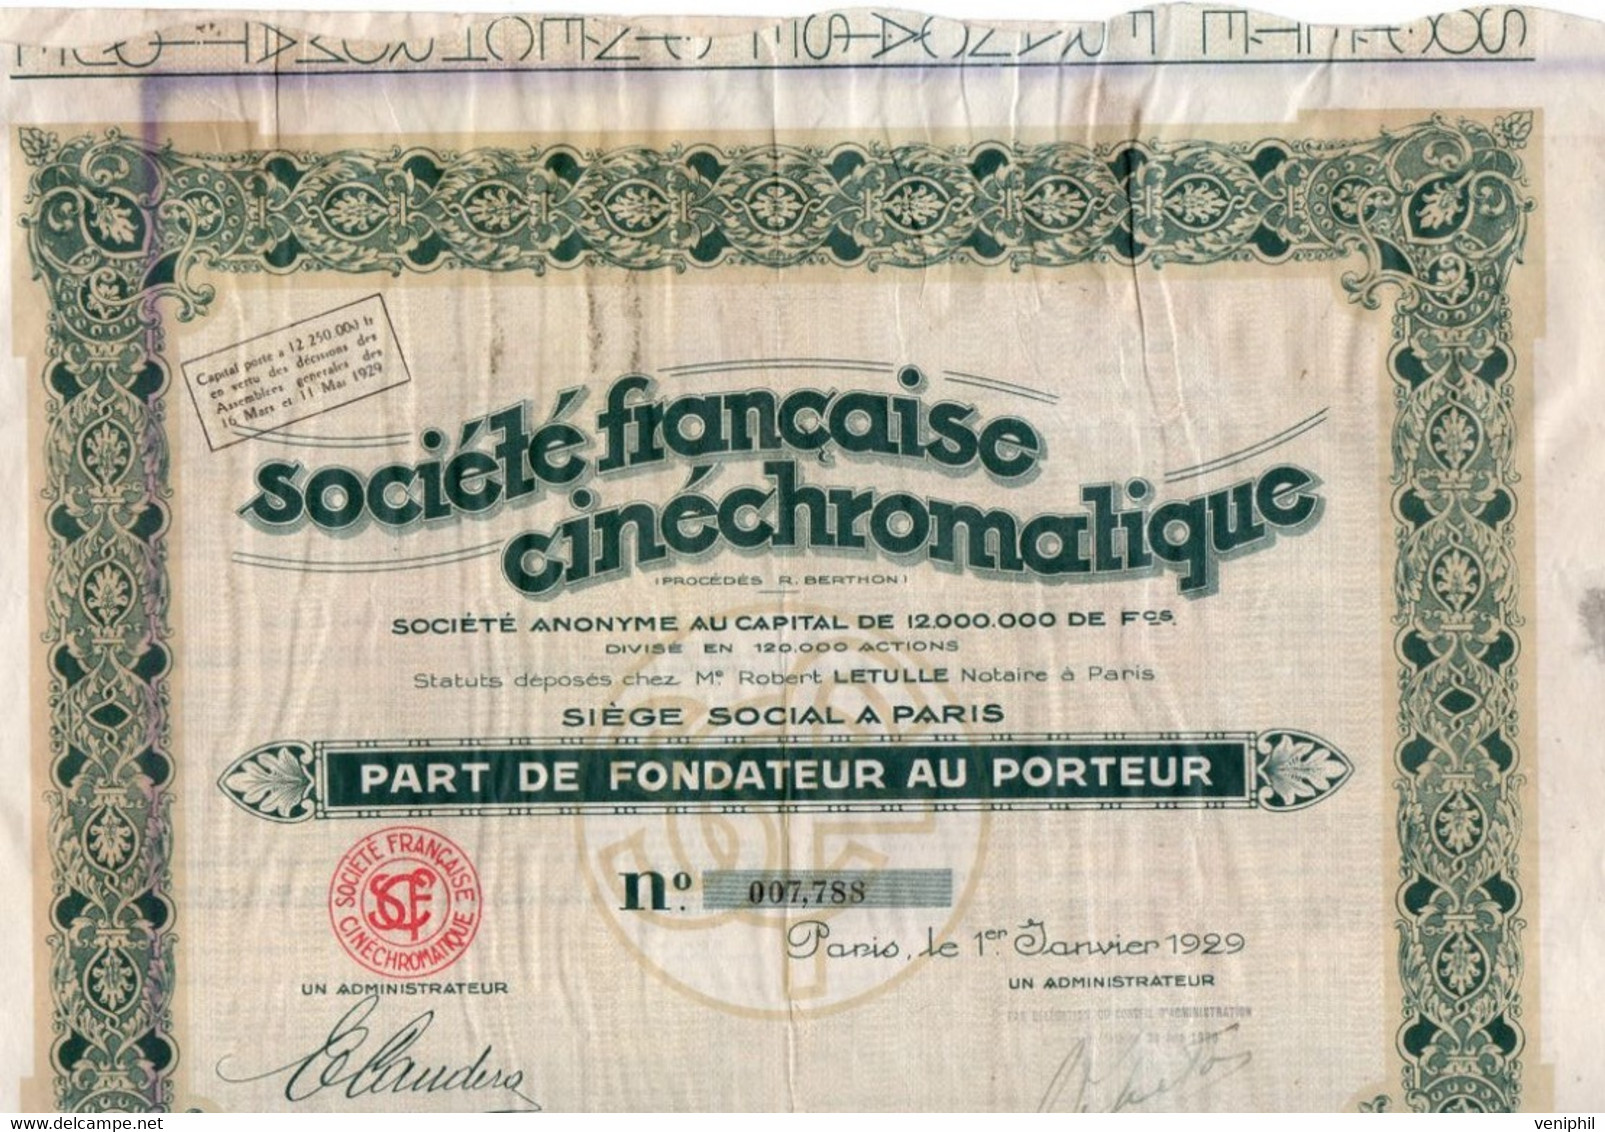 PART DE FONDATEUR -SOCIETE FRANCAISE CINECHROMATIQUE -ANNEE 1929 - Cinéma & Théatre